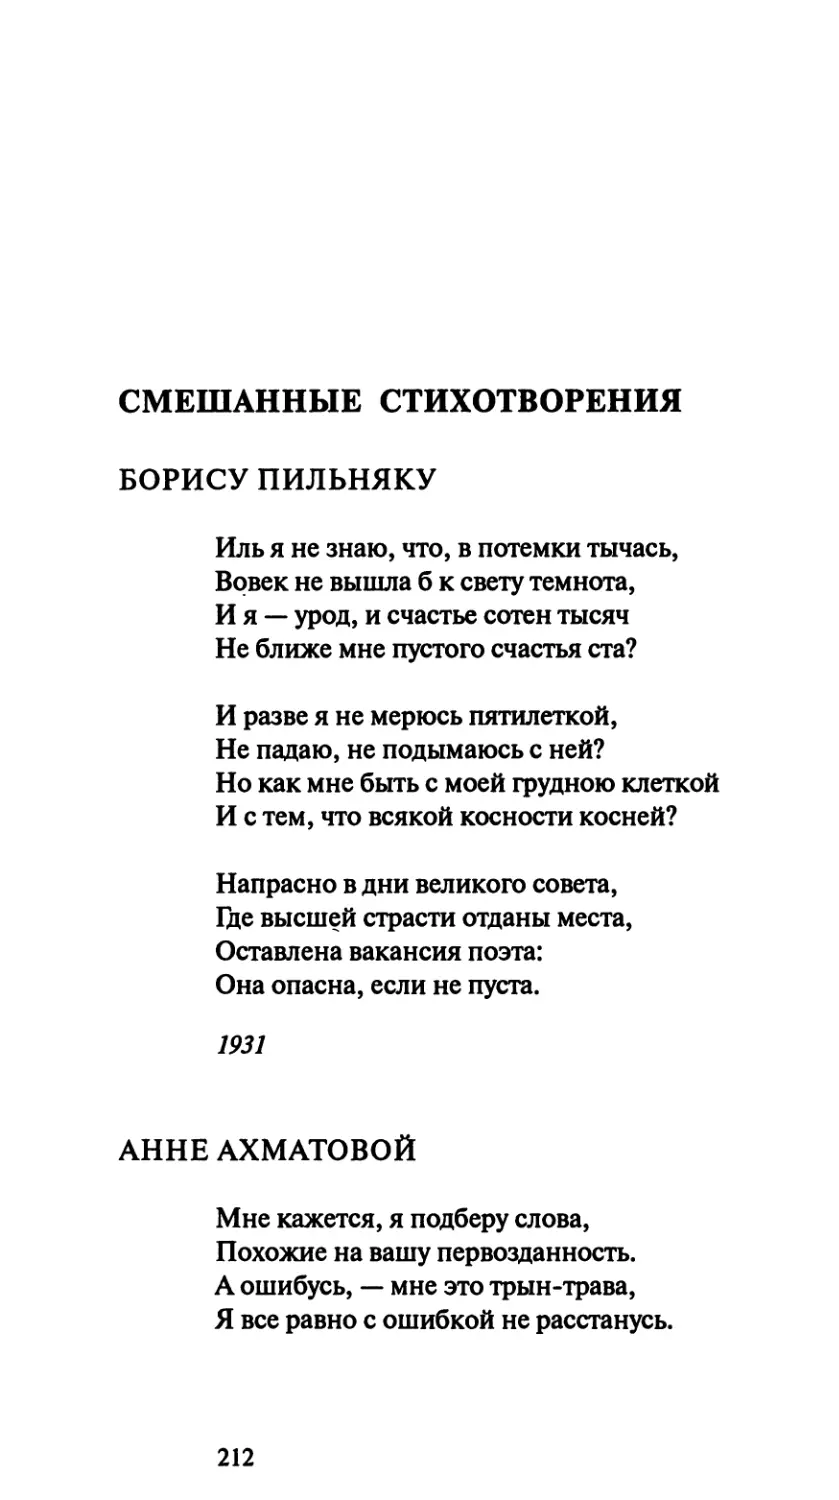 Смешанные стихотворения
Анне Ахматовой